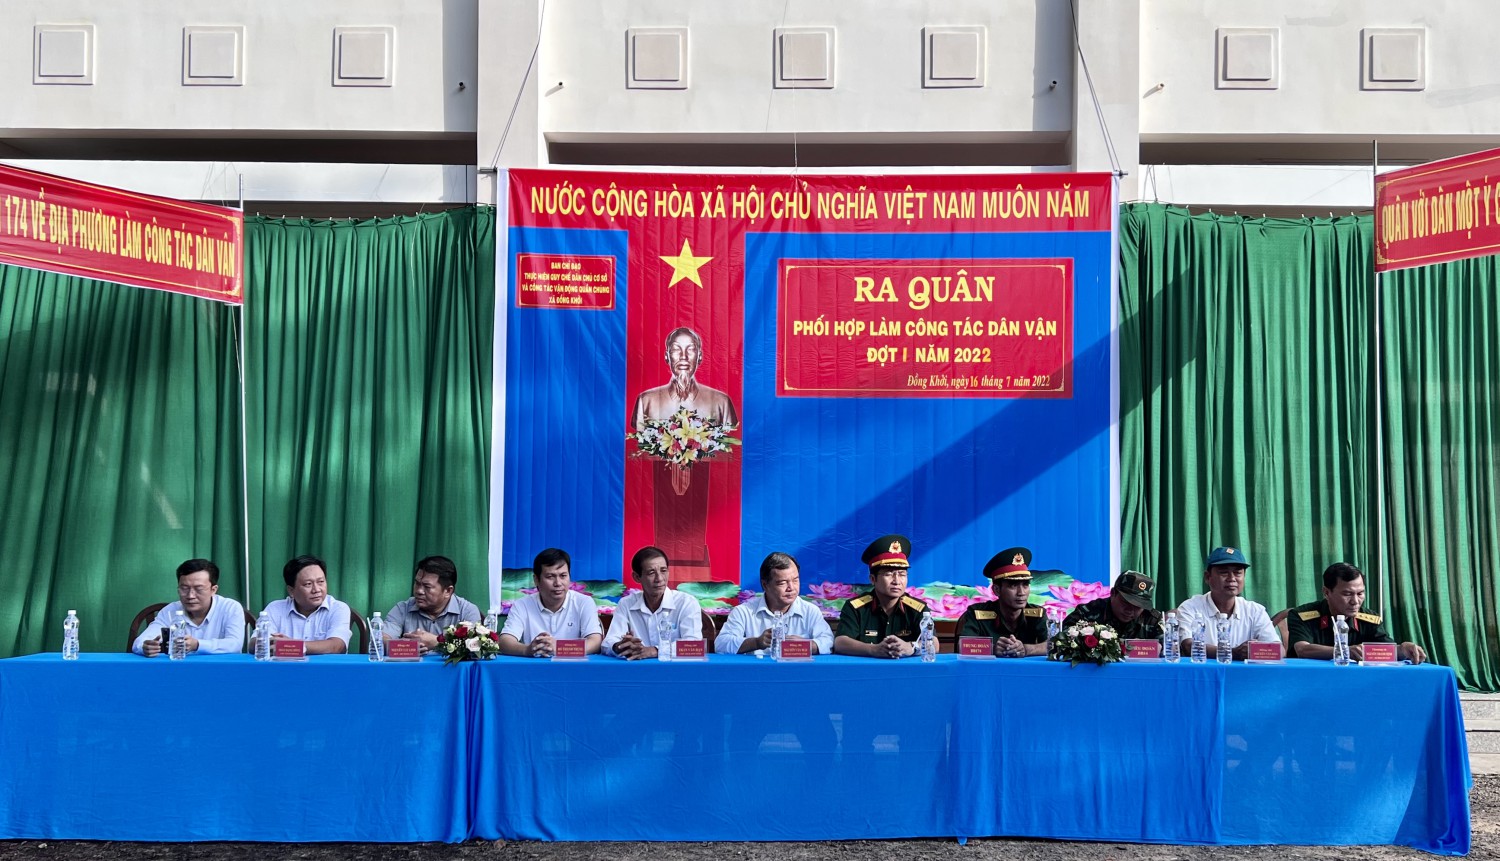 Huyện Châu Thành: Ra quân phối hợp làm công tác dân vận đợt 1 năm 2022